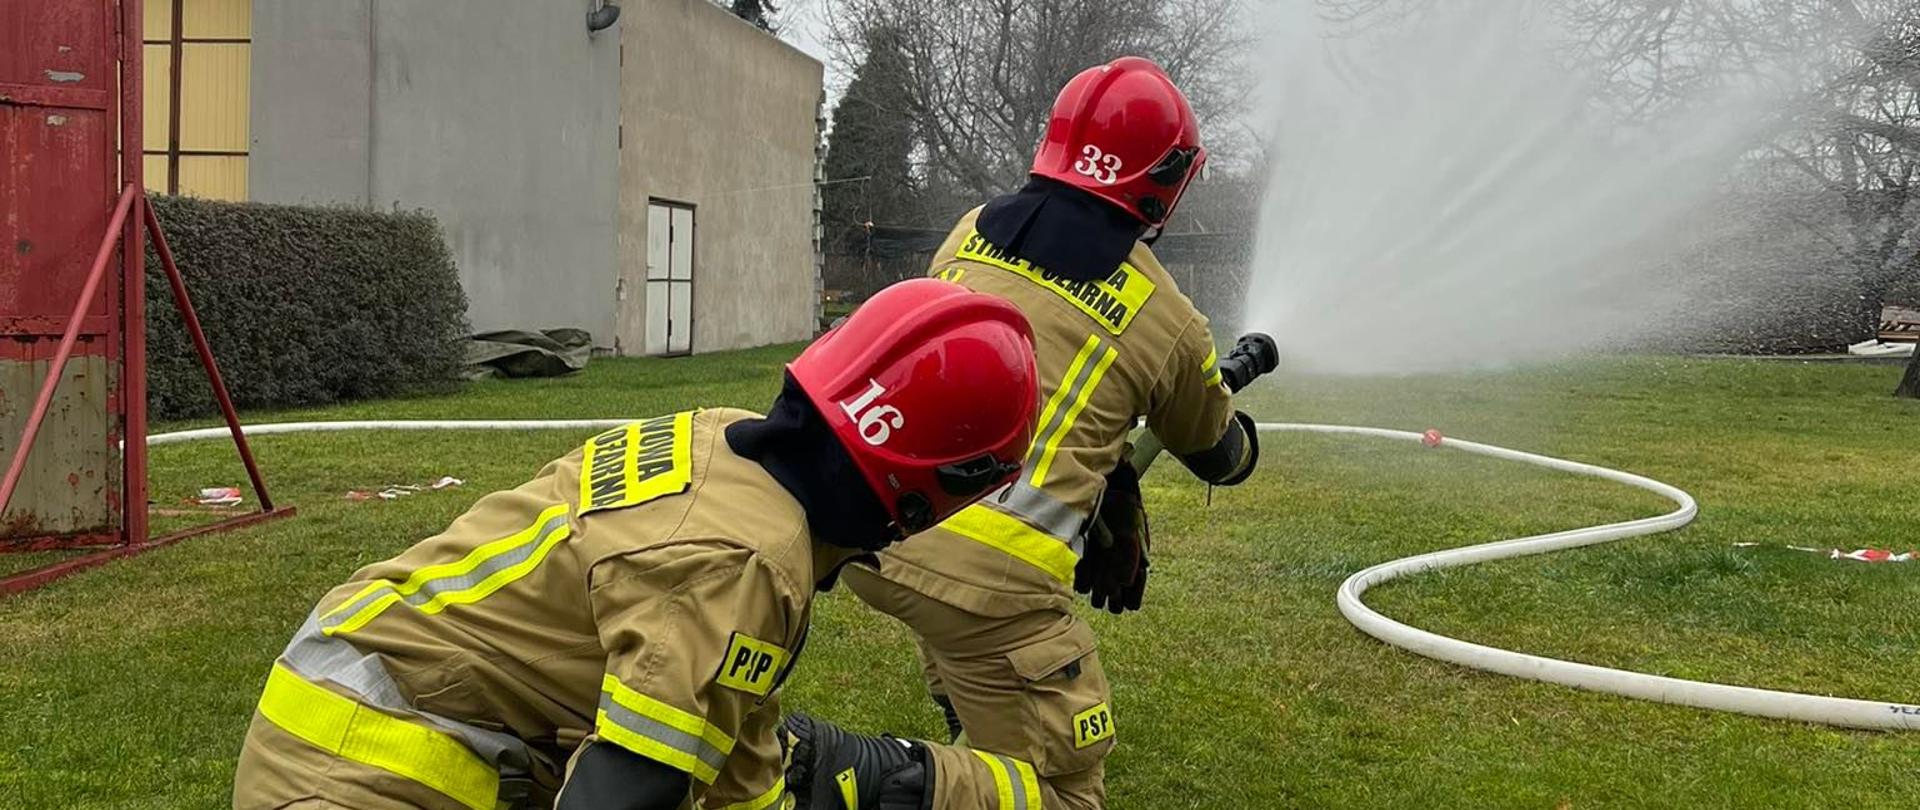 Doskonalenie zawodowe strażaków JRG gaszenie pożarów